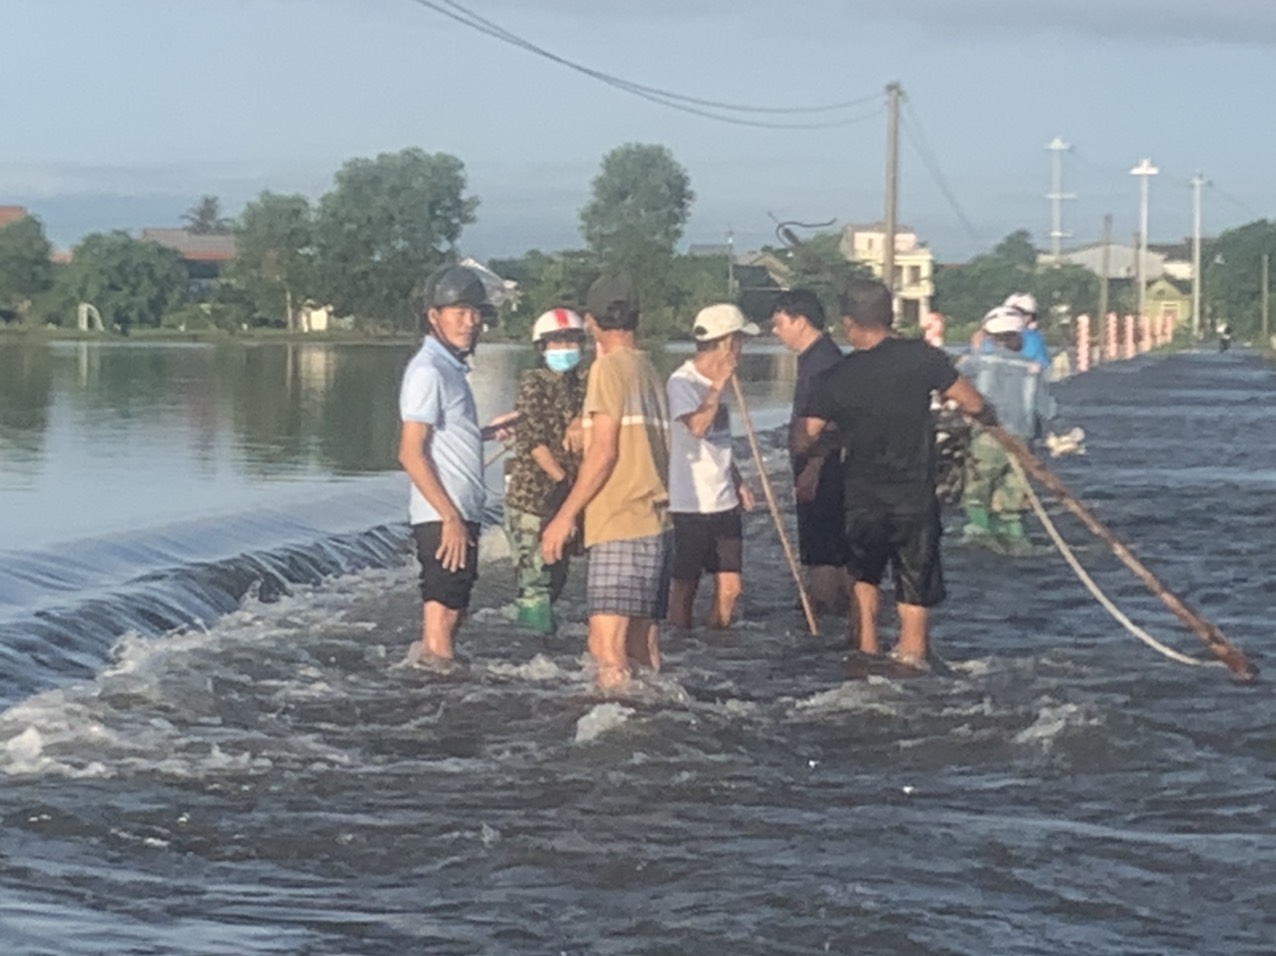 Tại xã Quảng Phước, huyện Quảng Điền nhiều tuyến đường vẫn còn ngập sâu và nước chảy mạnh,chính quyền địa phương đã tổ chức chốt chặn, đặt biển cảnh báo để người dân tránh qua lại khu vực nguy hiểm.